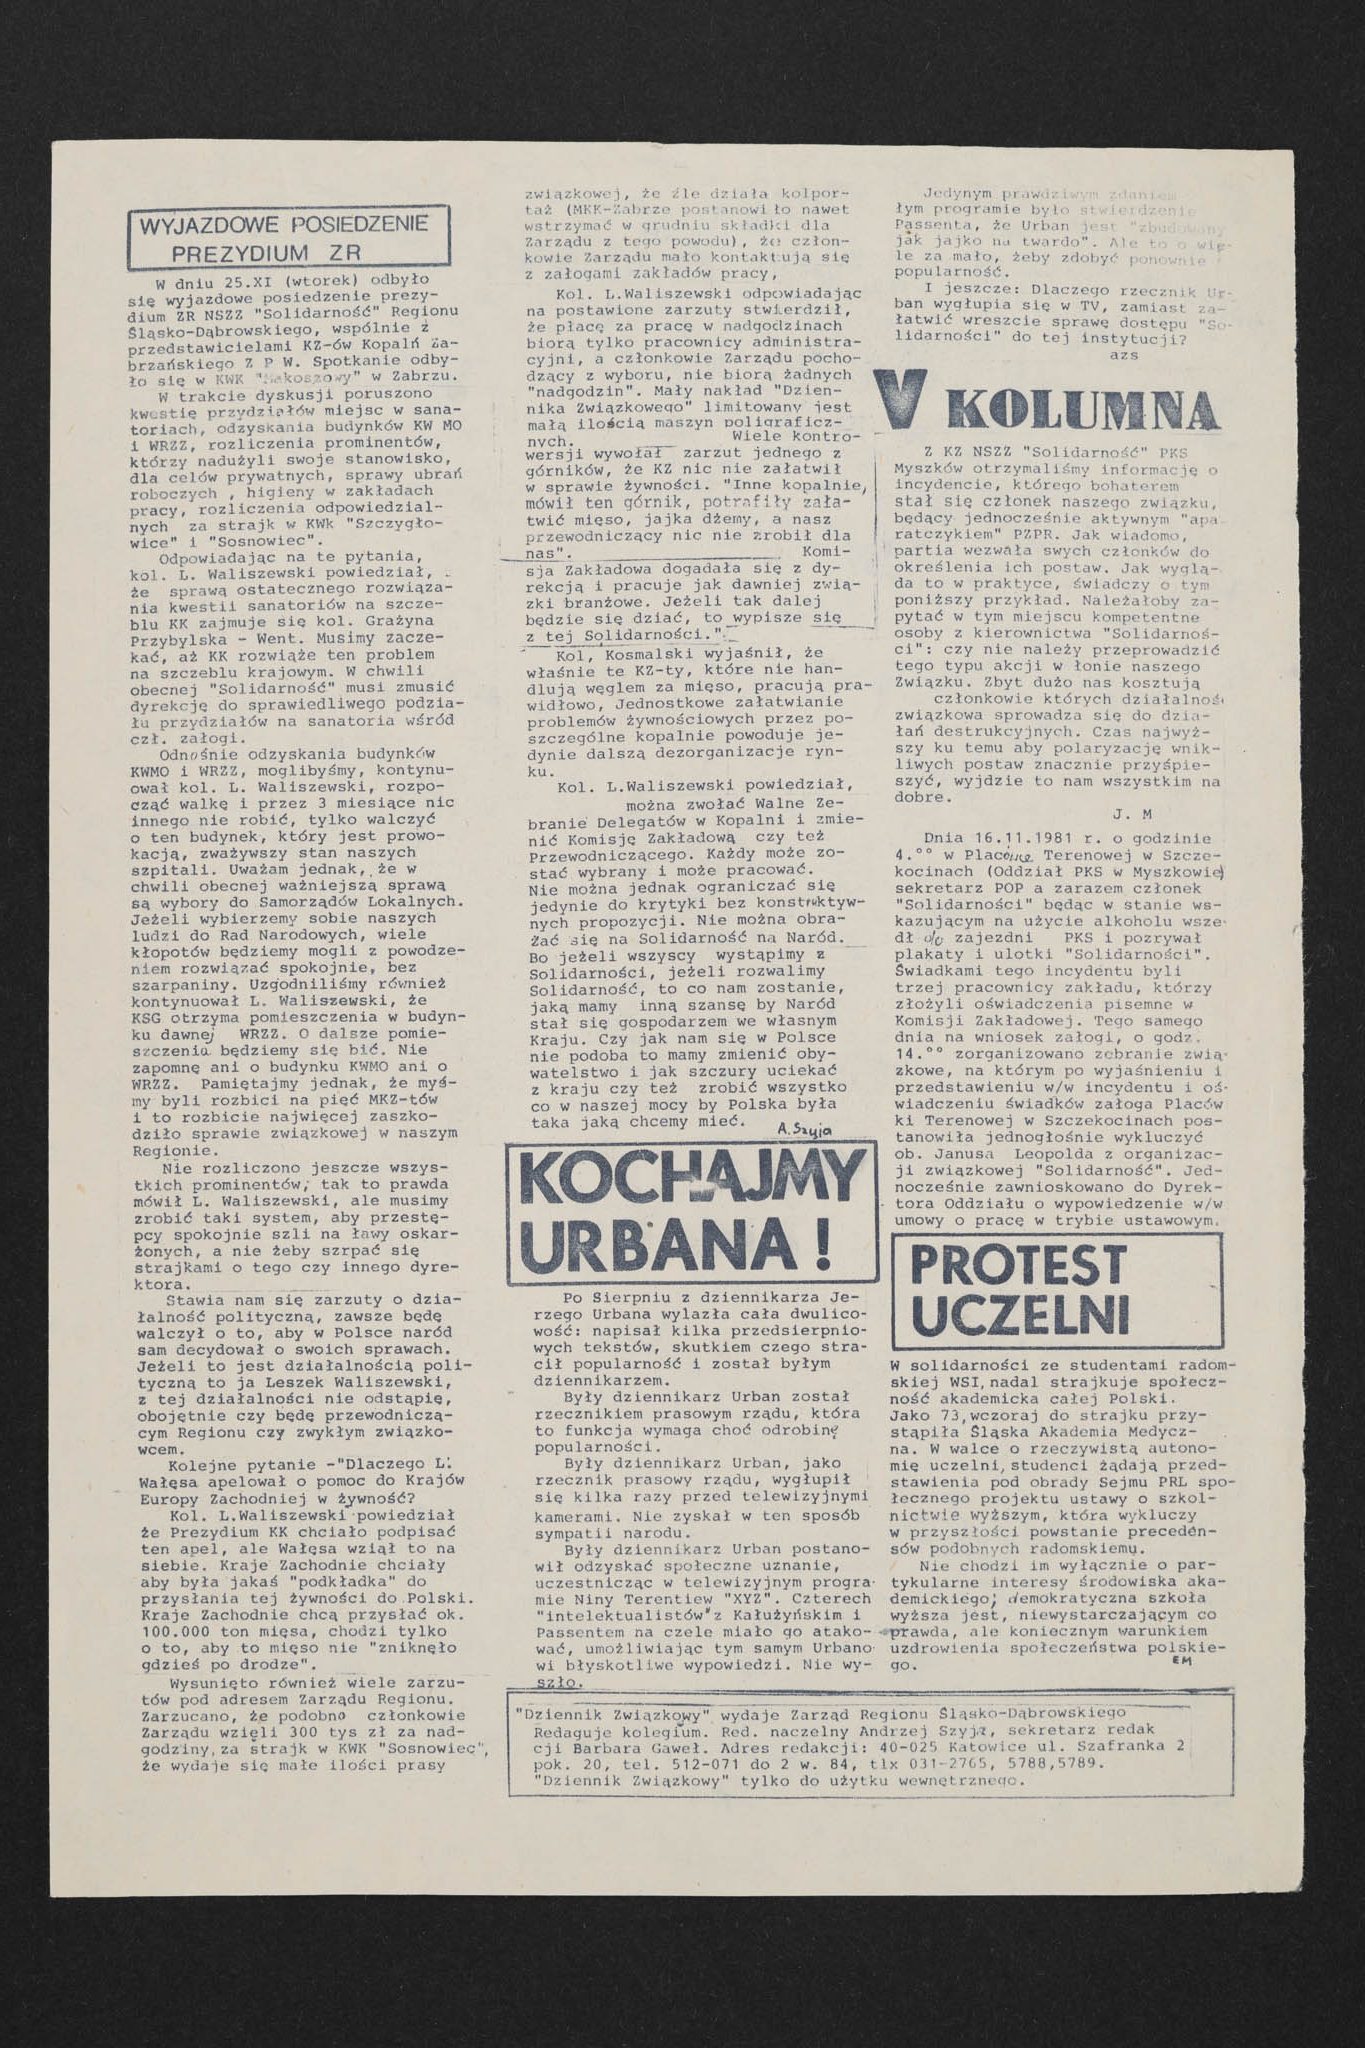 Dziennik związkowy nr 66 25.11.1981